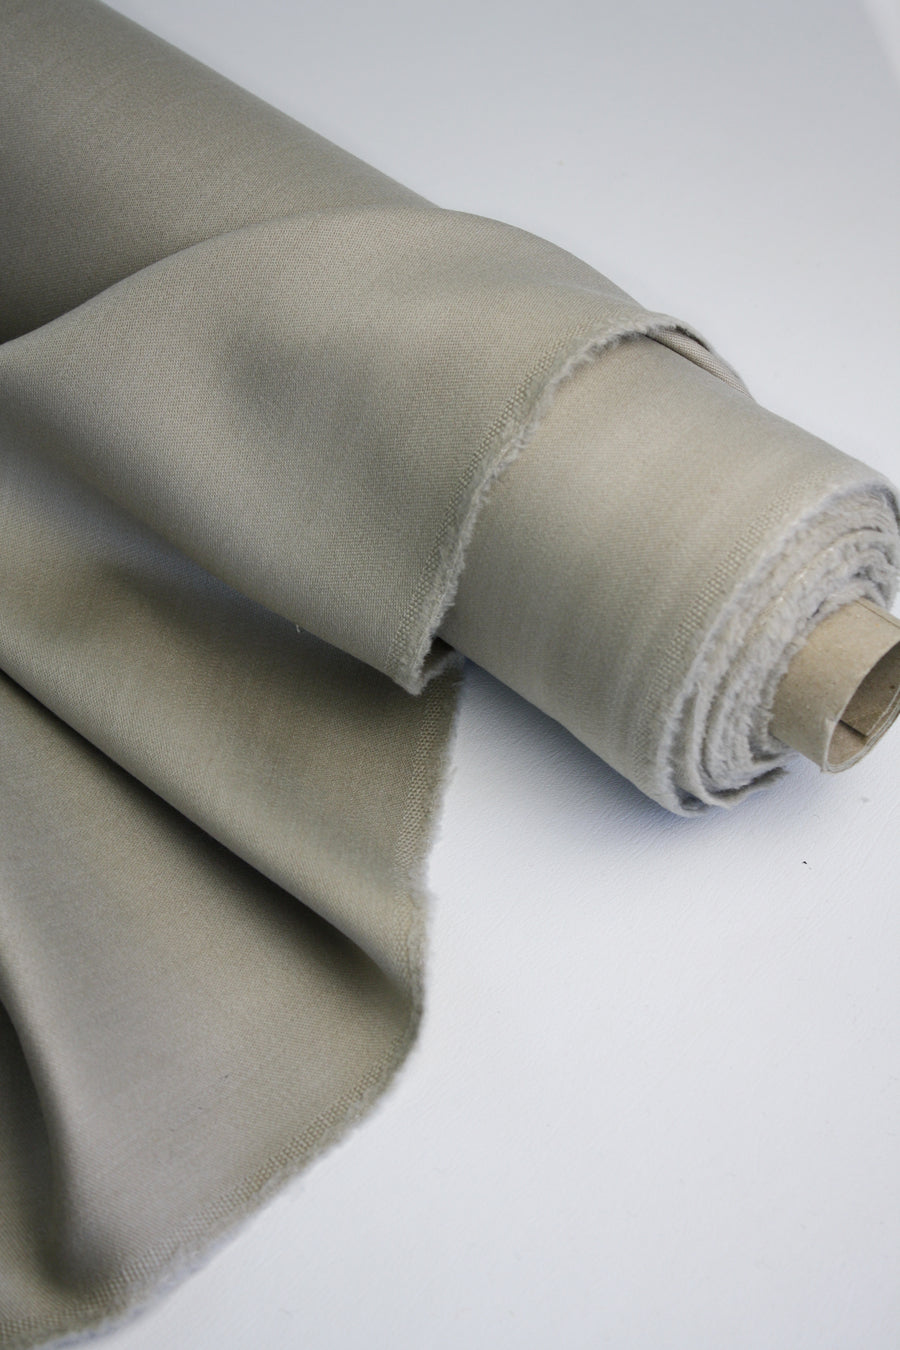 New Zealand Wool Polished Gabardine | Alabaster